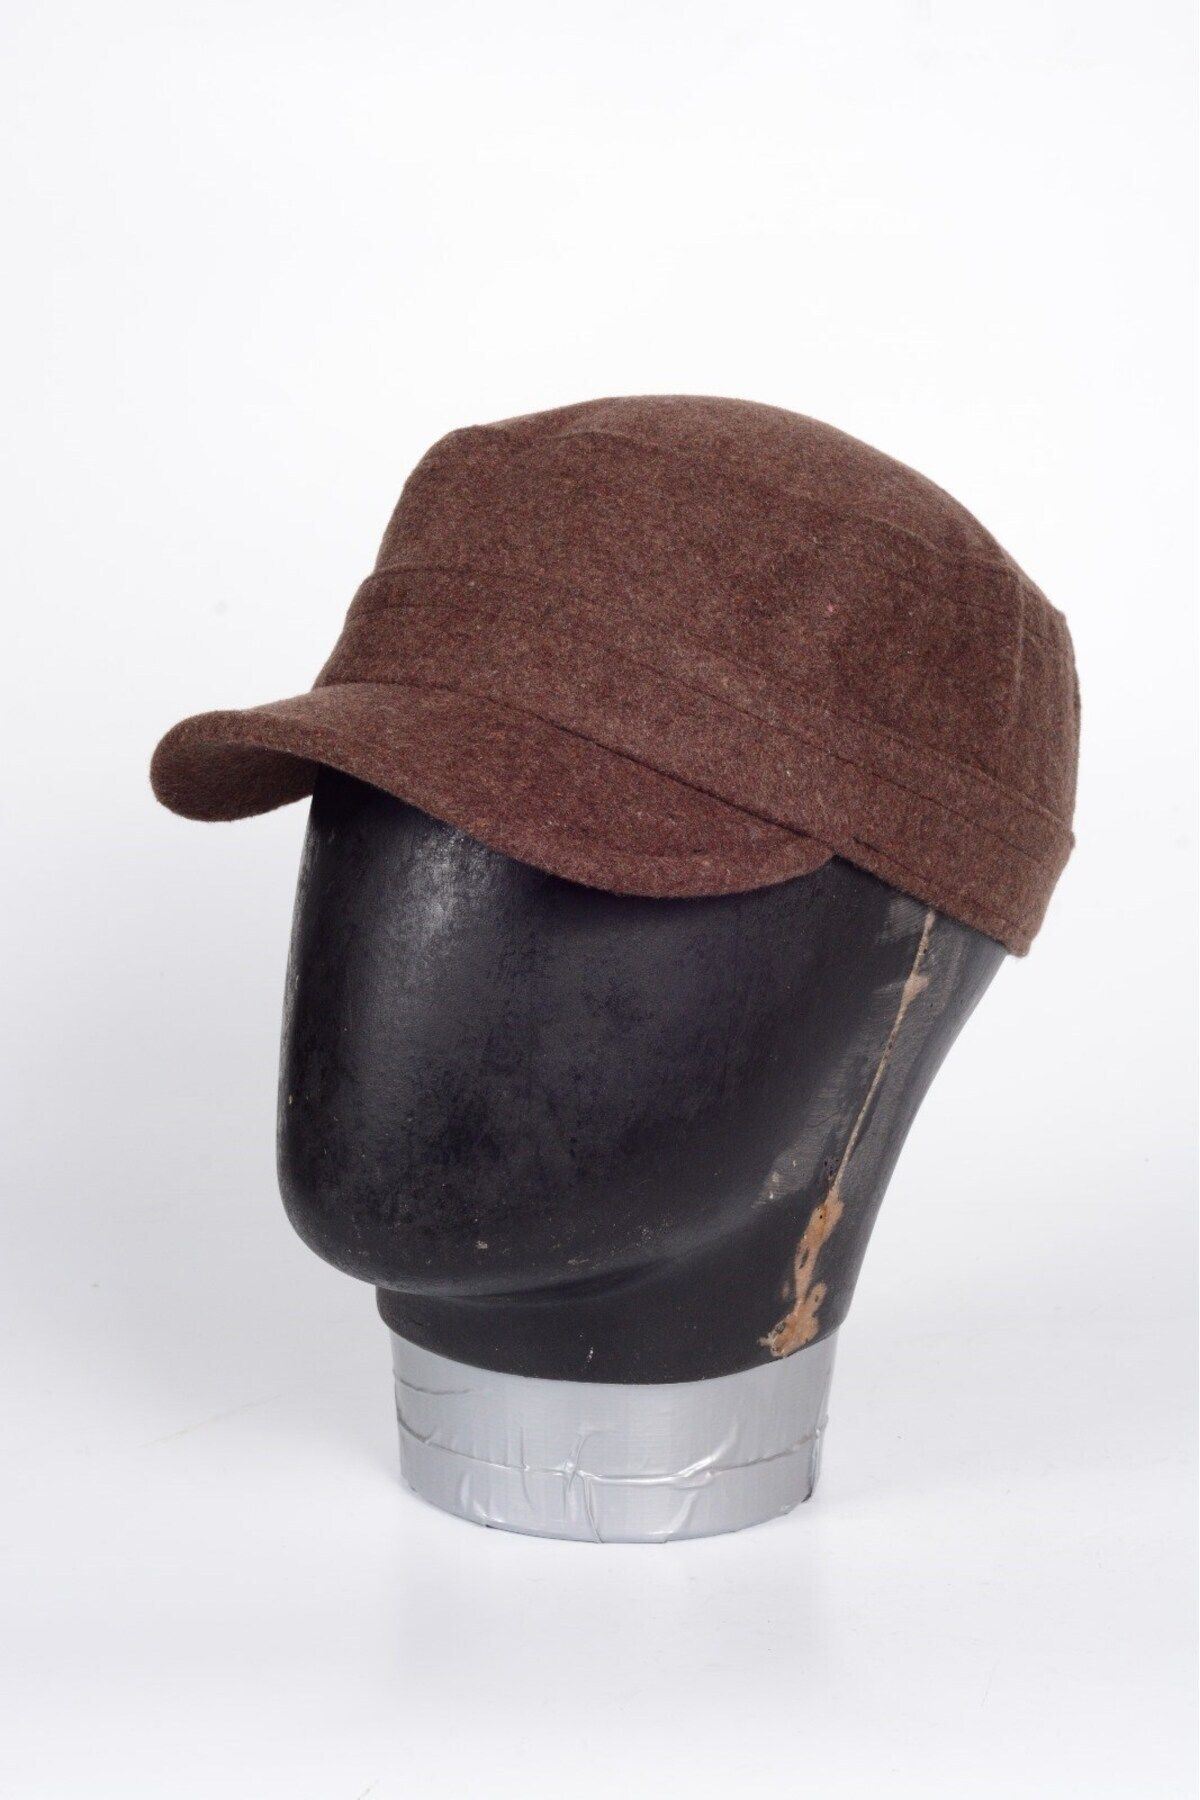 mercantoptan Unisex %100 Yün Desenli Yünlü Bere Kışlık Castro Şapka